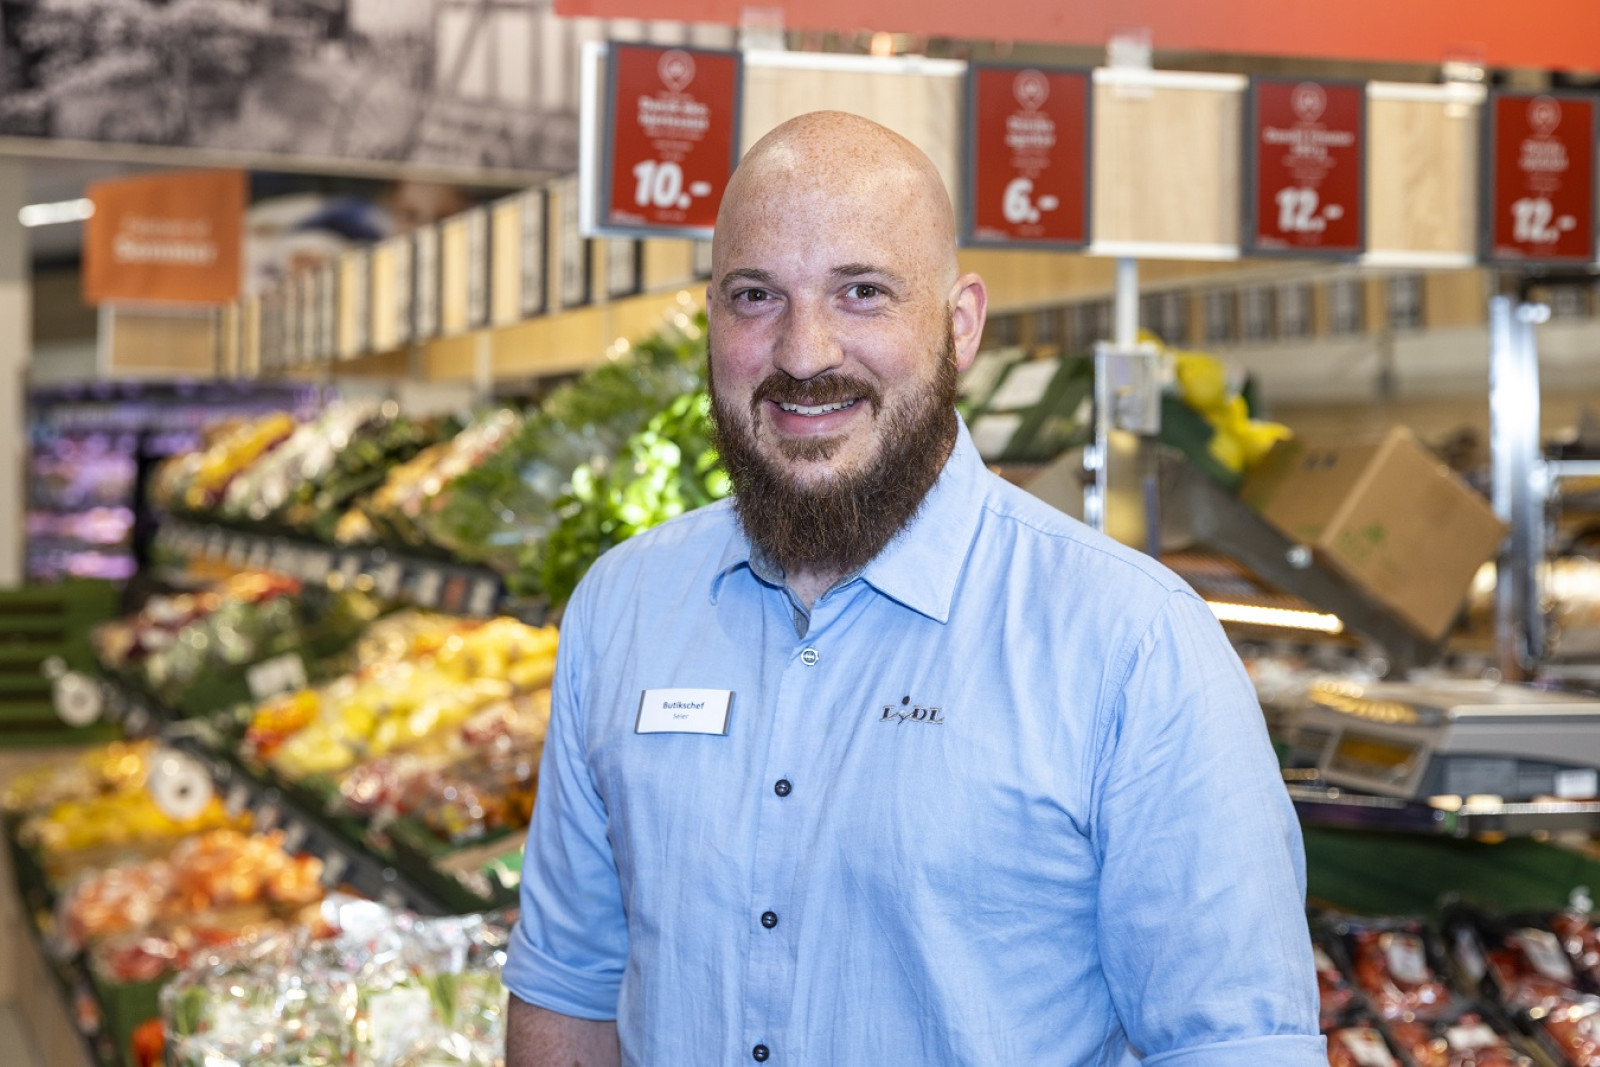 Butikschef Seier Kraft Hansen fra Lidl-butikken på Rådhuspladsen Aarhus